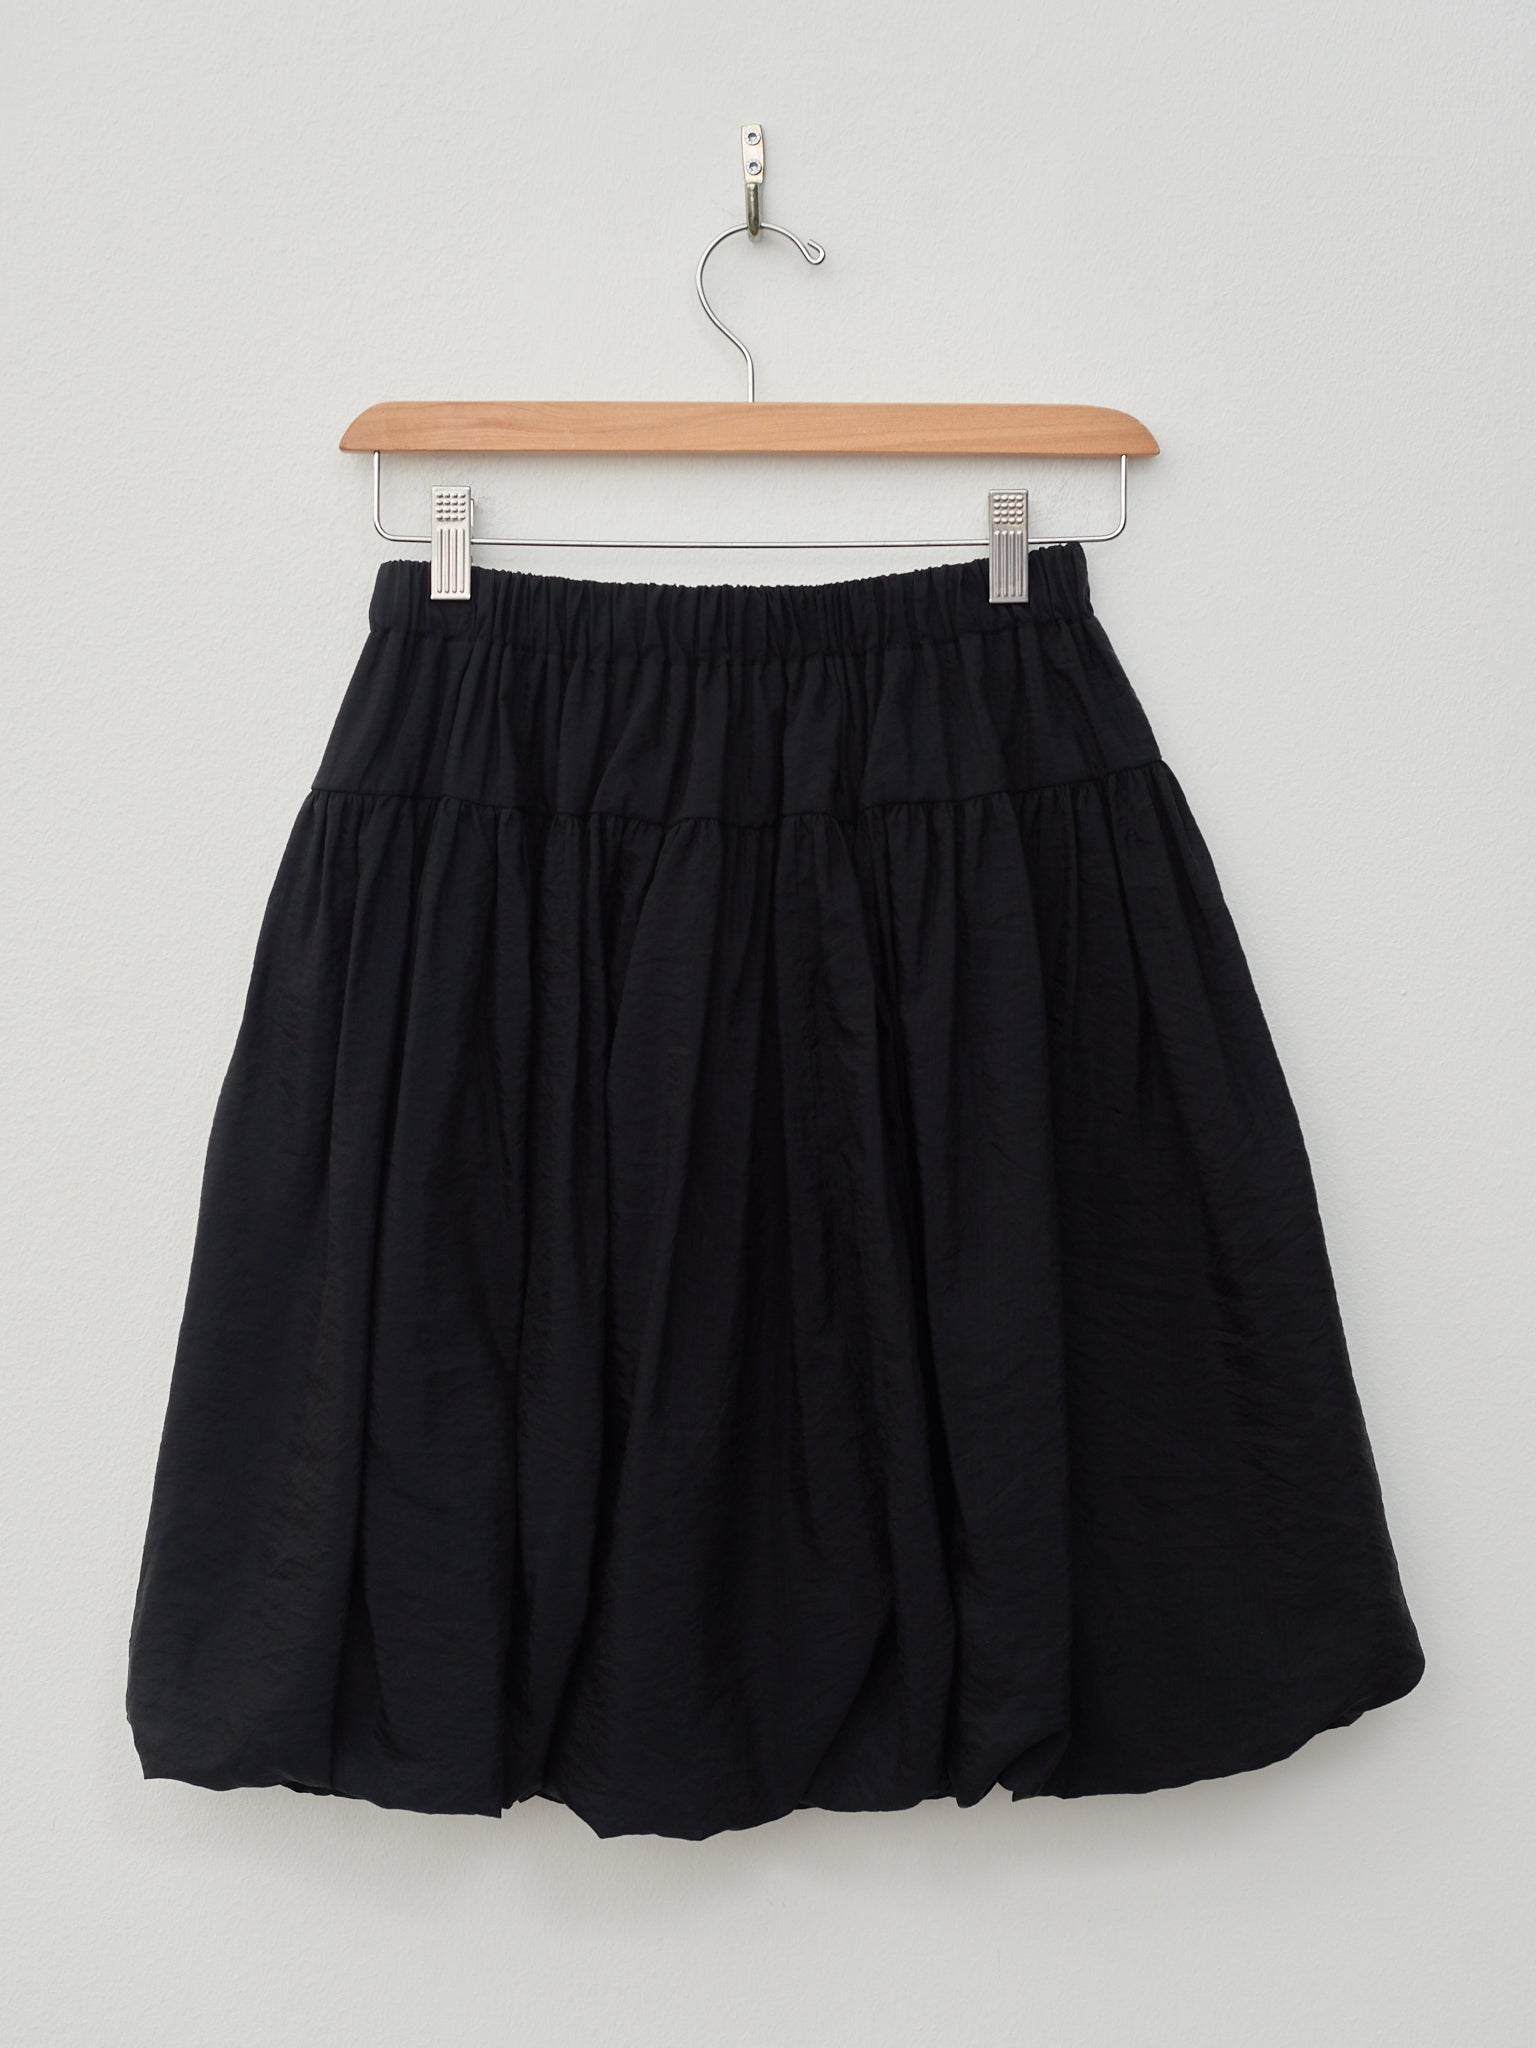 Namu Shop - Sara Lanzi Ripstop Balloon Skirt - Black